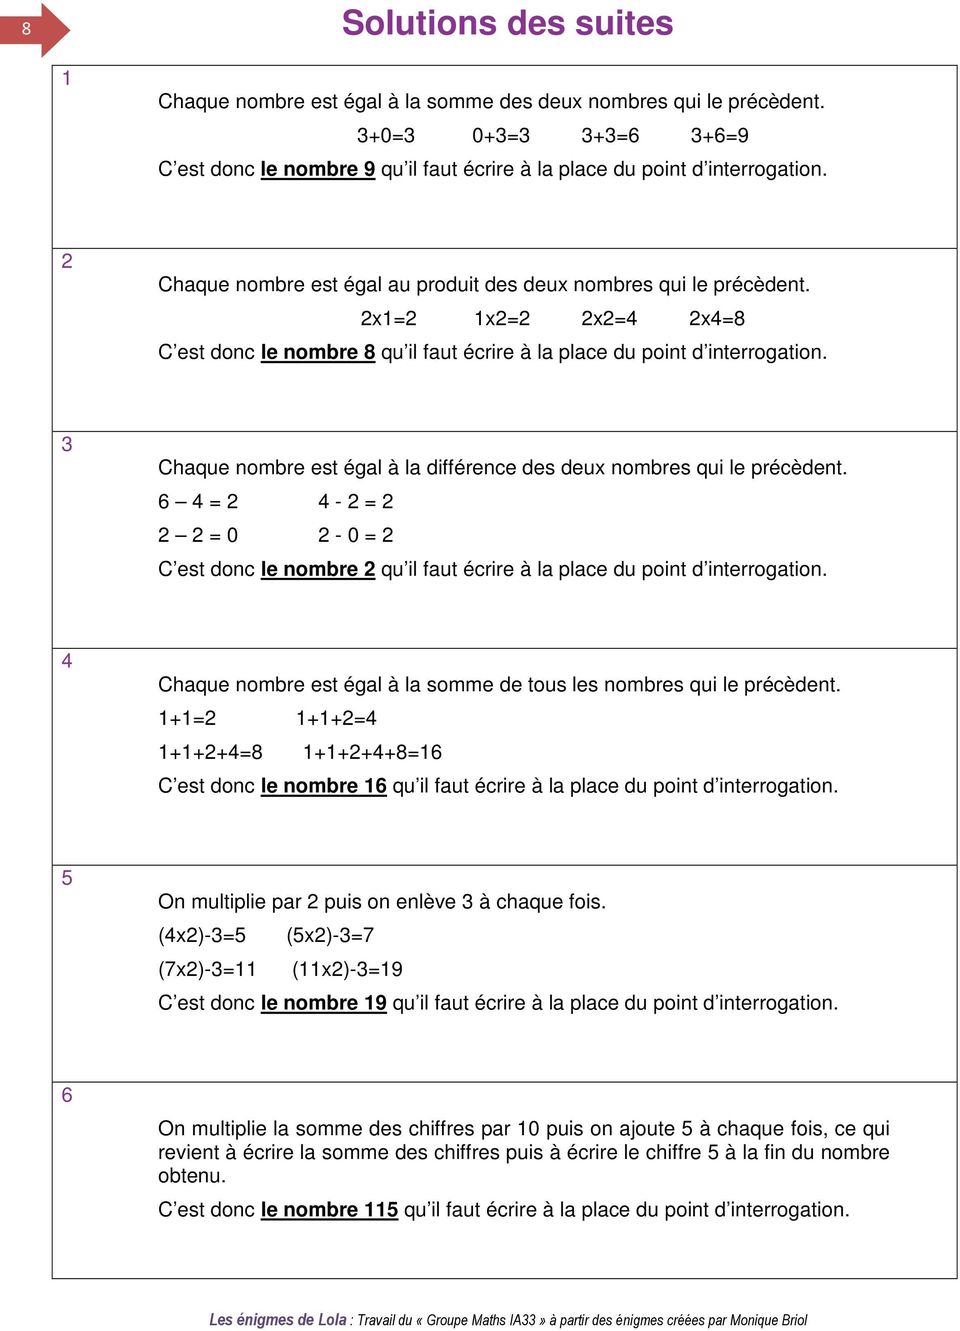 3 Chaque nombre est égal à la différence des deux nombres qui le précèdent. 6 4 = 2 4-2 = 2 2 2 = 0 2-0 = 2 C est donc le nombre 2 qu il faut écrire à la place du point d interrogation.